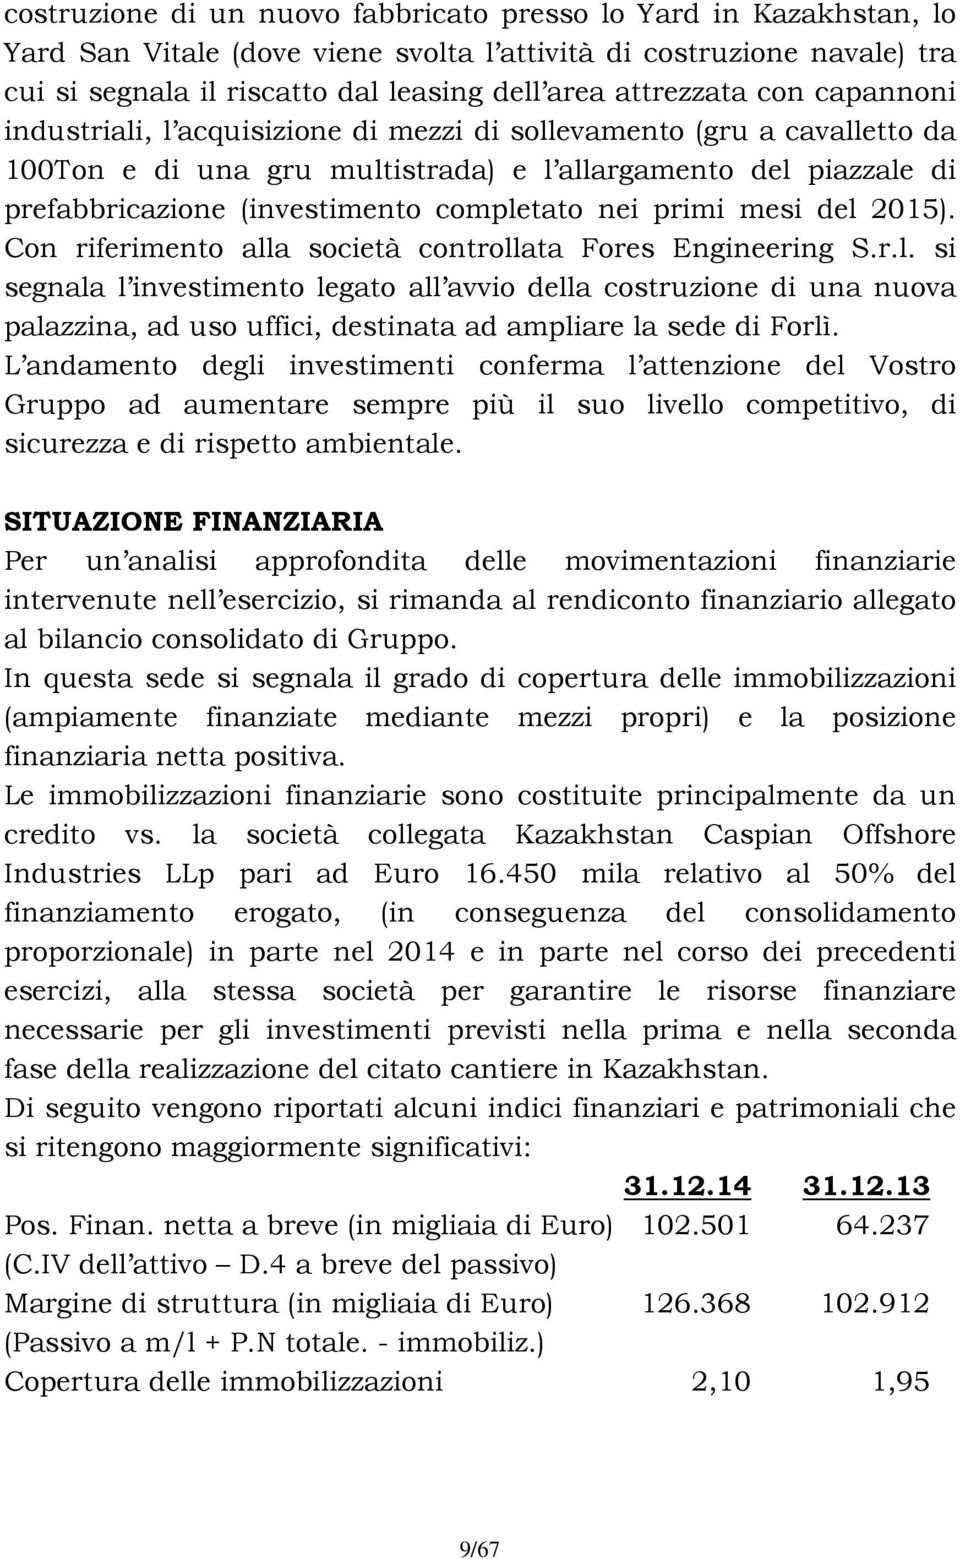 completato nei primi mesi del 2015). Con riferimento alla società controllata Fores Engineering S.r.l. si segnala l investimento legato all avvio della costruzione di una nuova palazzina, ad uso uffici, destinata ad ampliare la sede di Forlì.